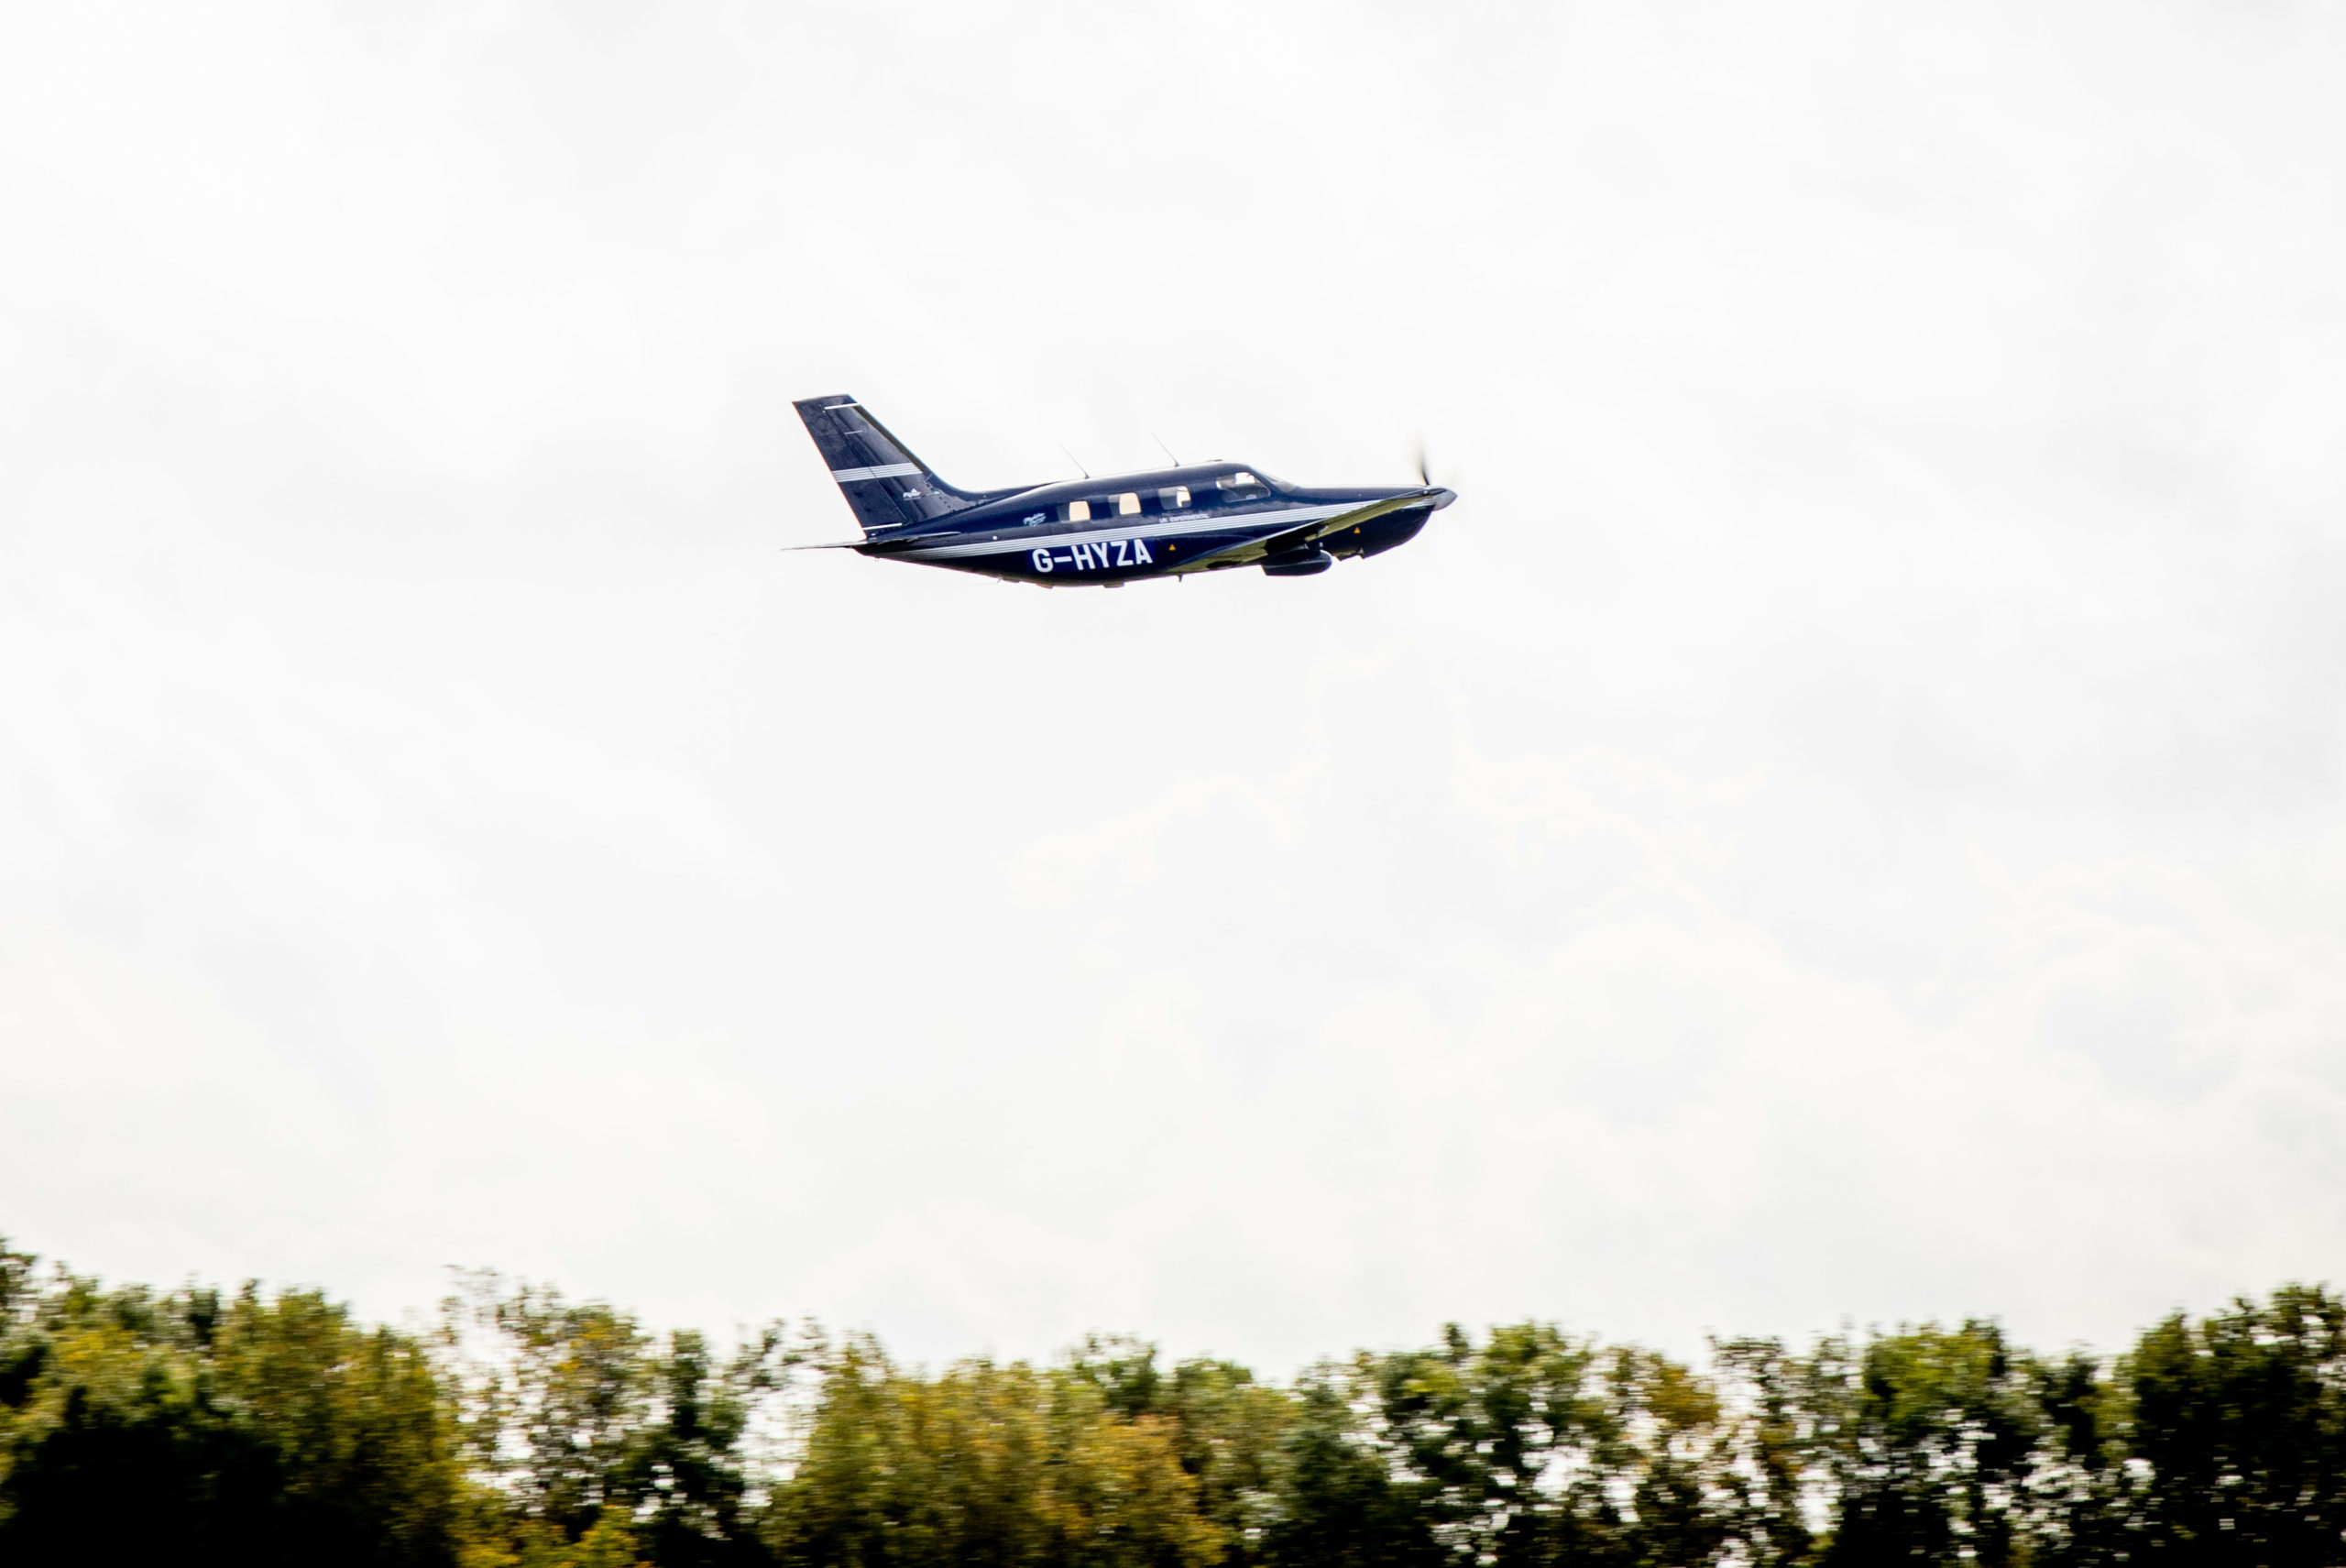 Hydrogen-powered passenger aircraft completes maiden flight